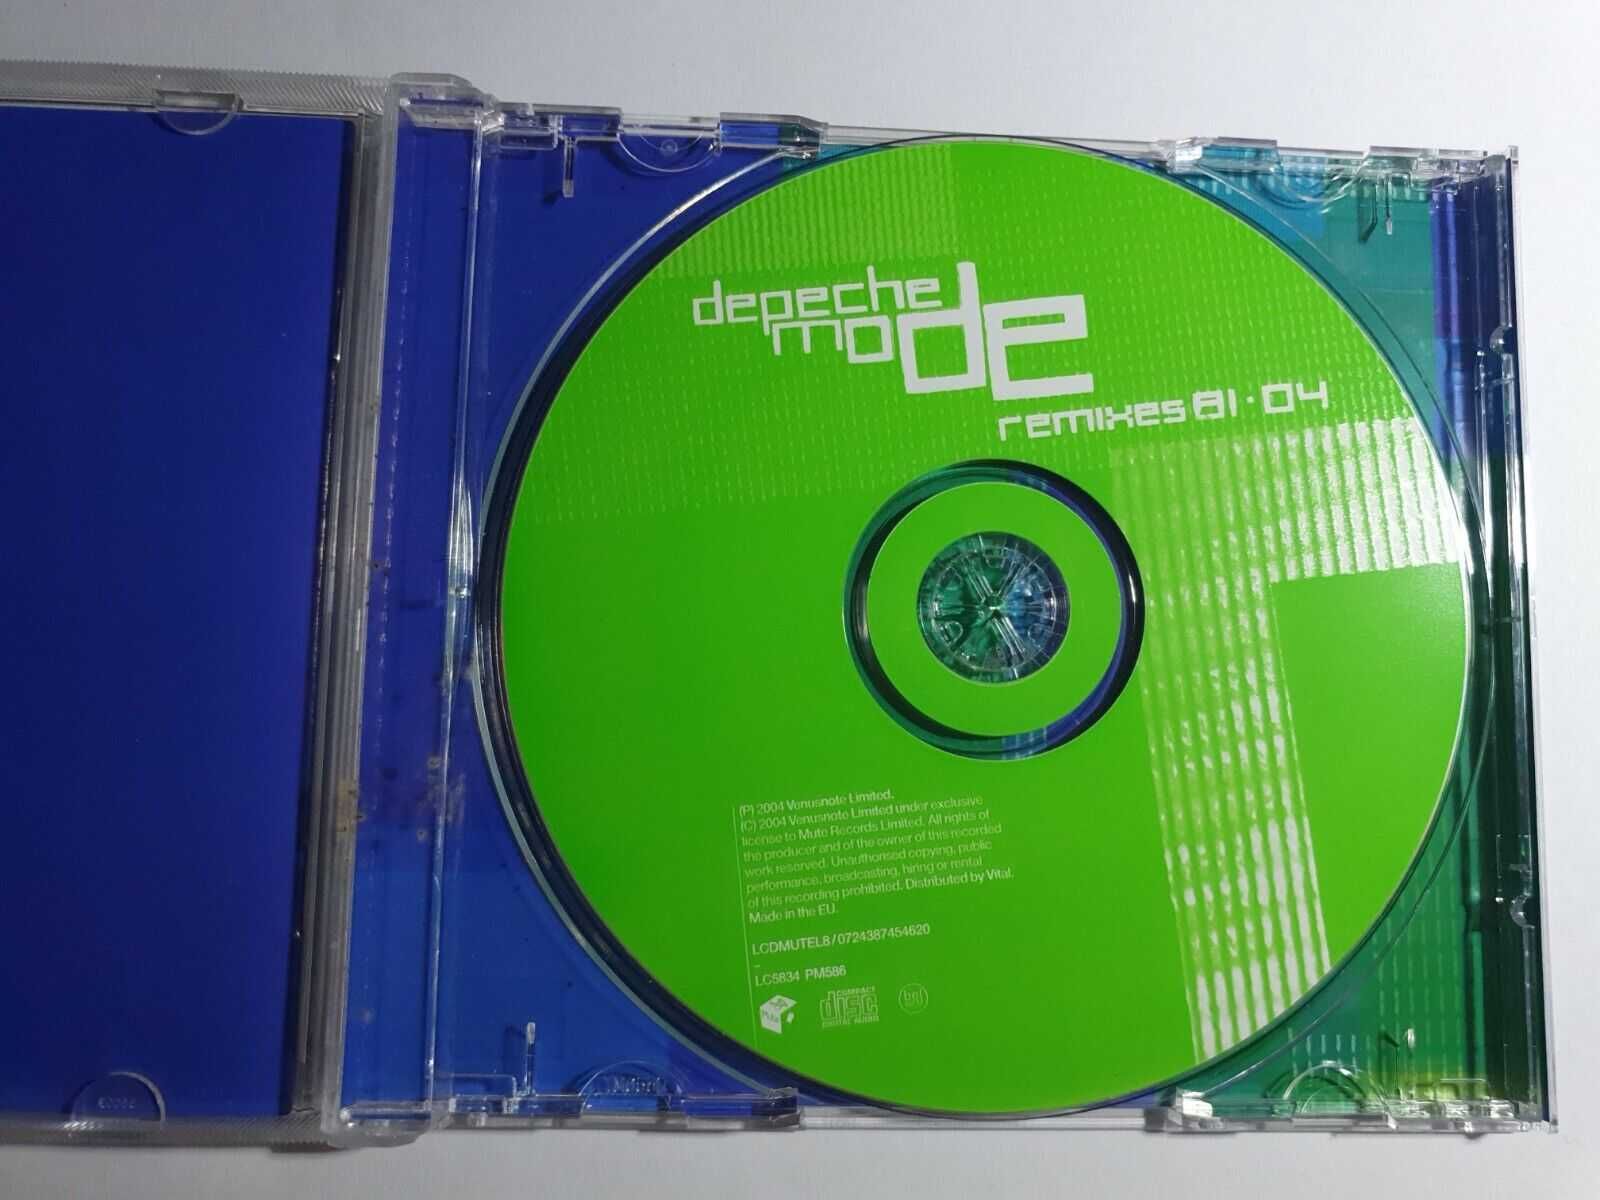 Depeche Mode - Remixes 81-04 CD